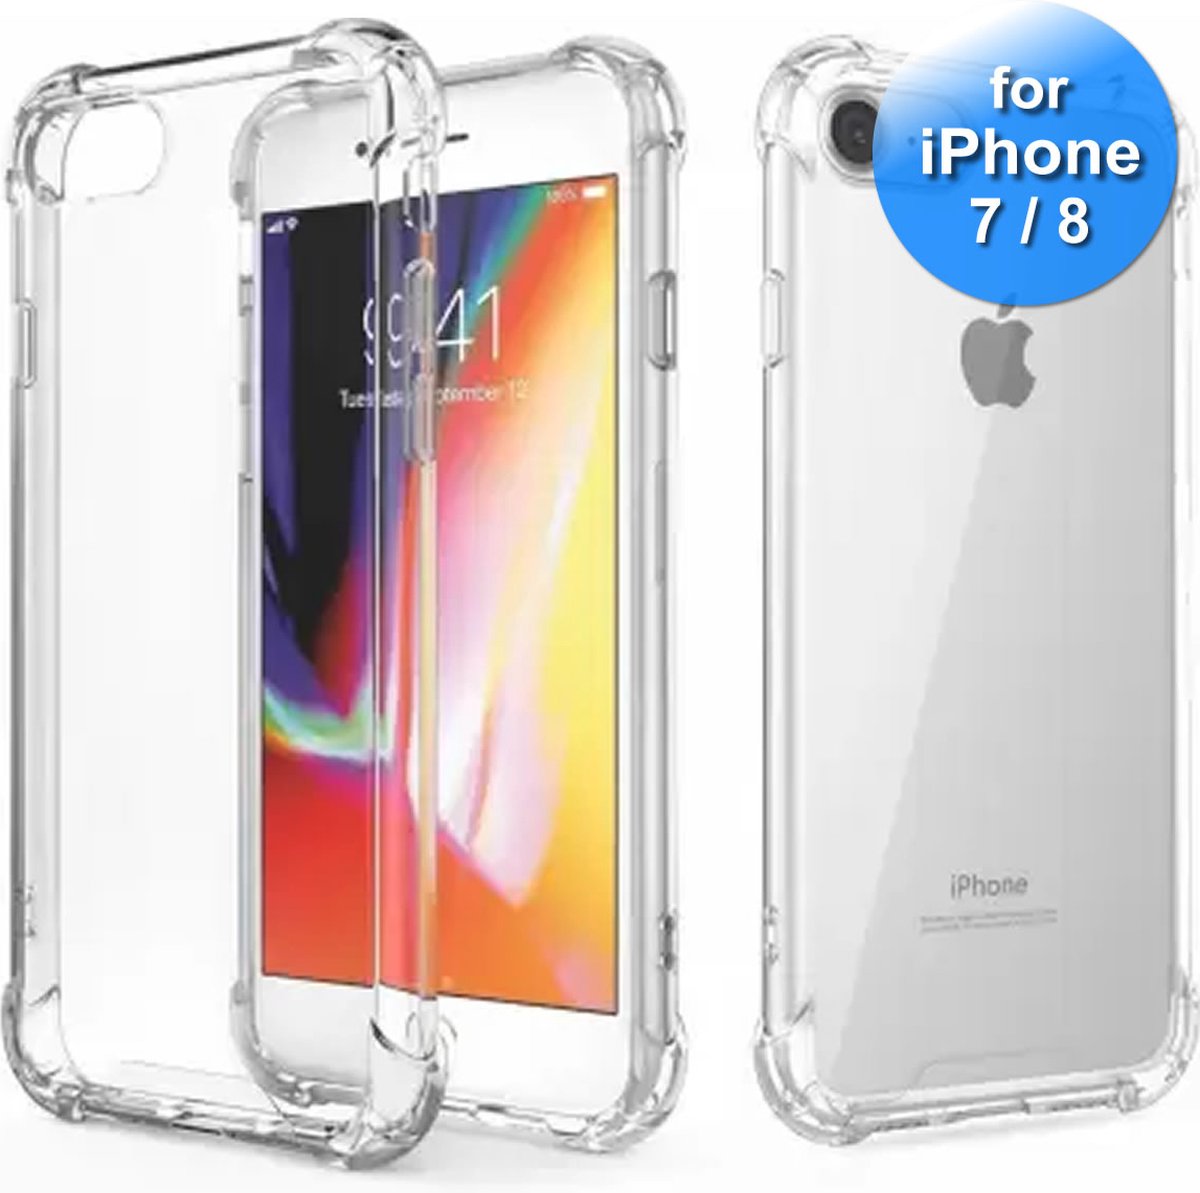 Hoesje geschikt voor iPhone 7 en iPhone 8 - Anti Shock Cover - Hard Back Cover - Transparant